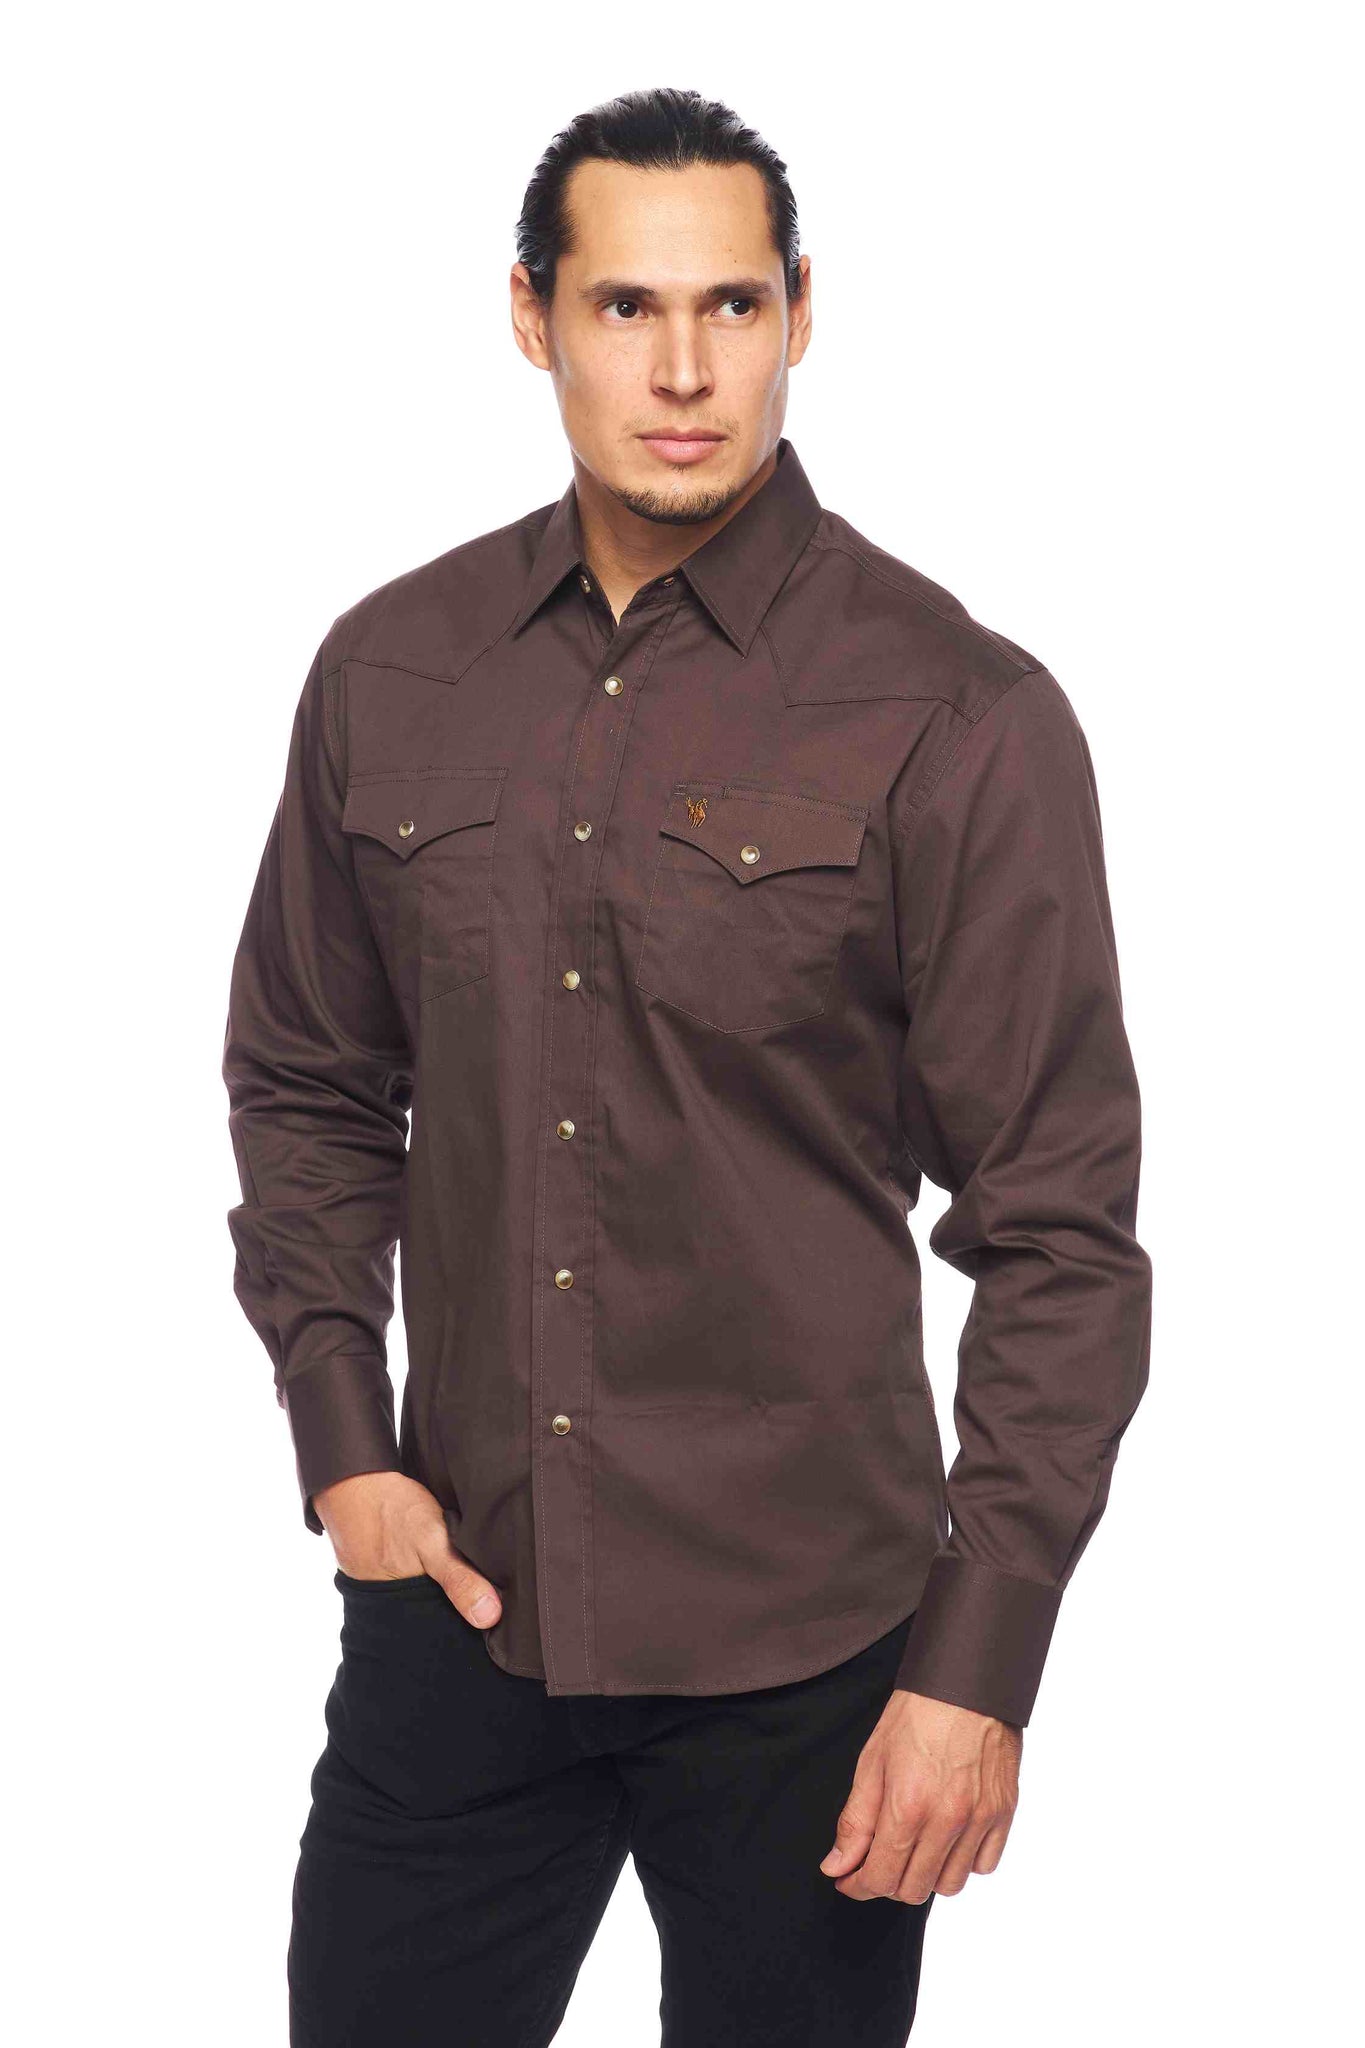 Camisas occidentales sólidas de sarga de algodón de manga larga para hombre con botones a presión